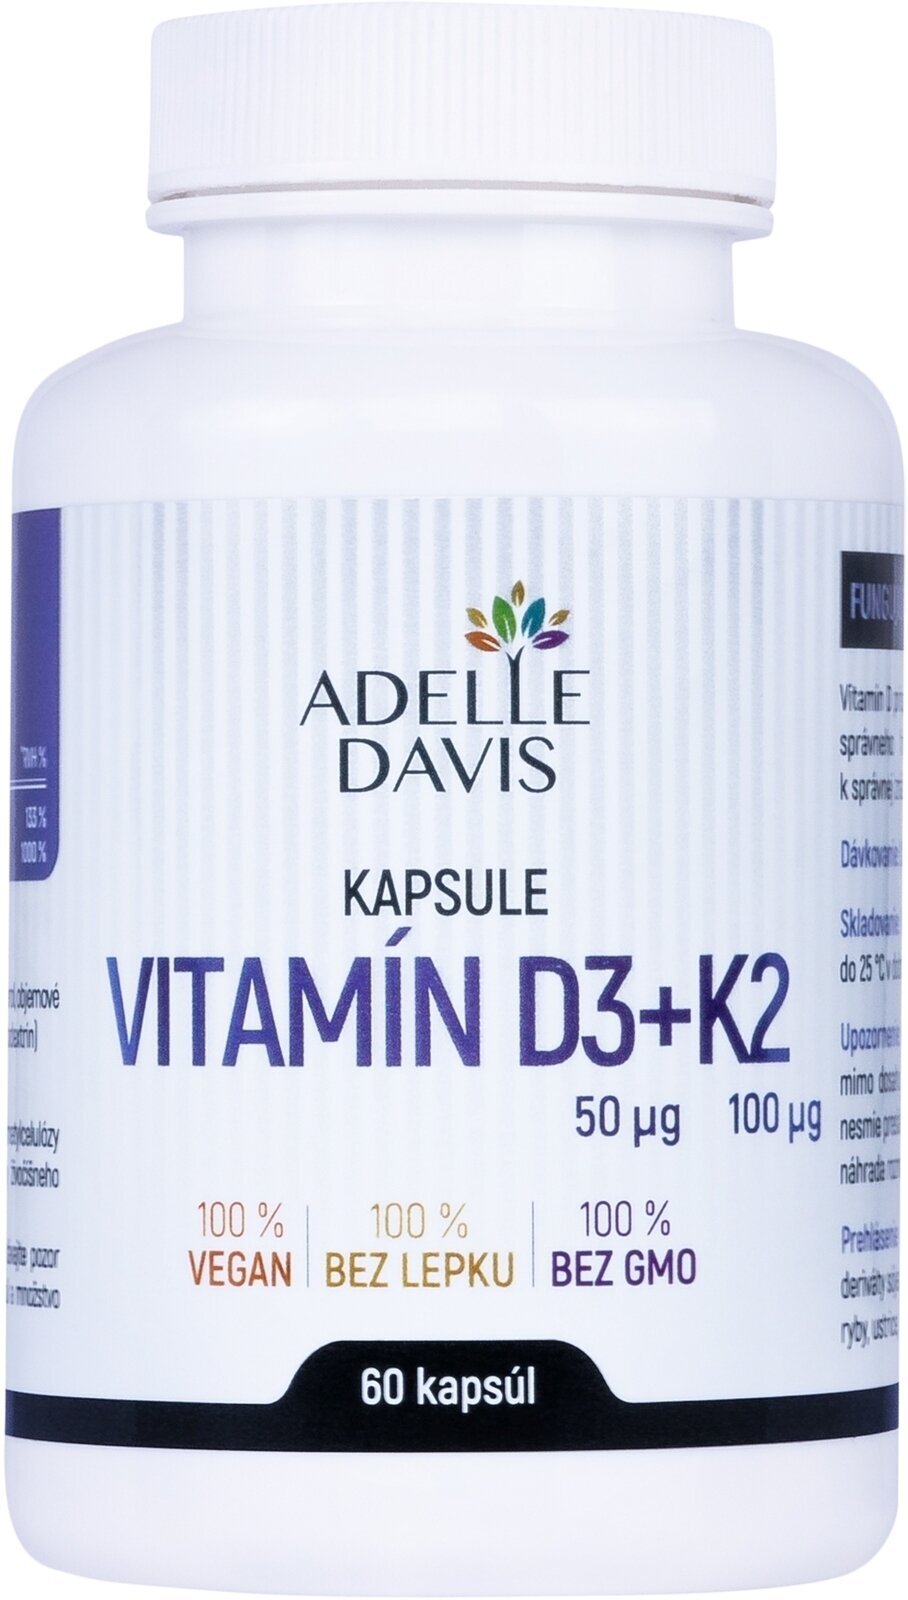 D Vitamin Adelle Davis Vitamin D3 + K2 60 Capsules D Vitamin